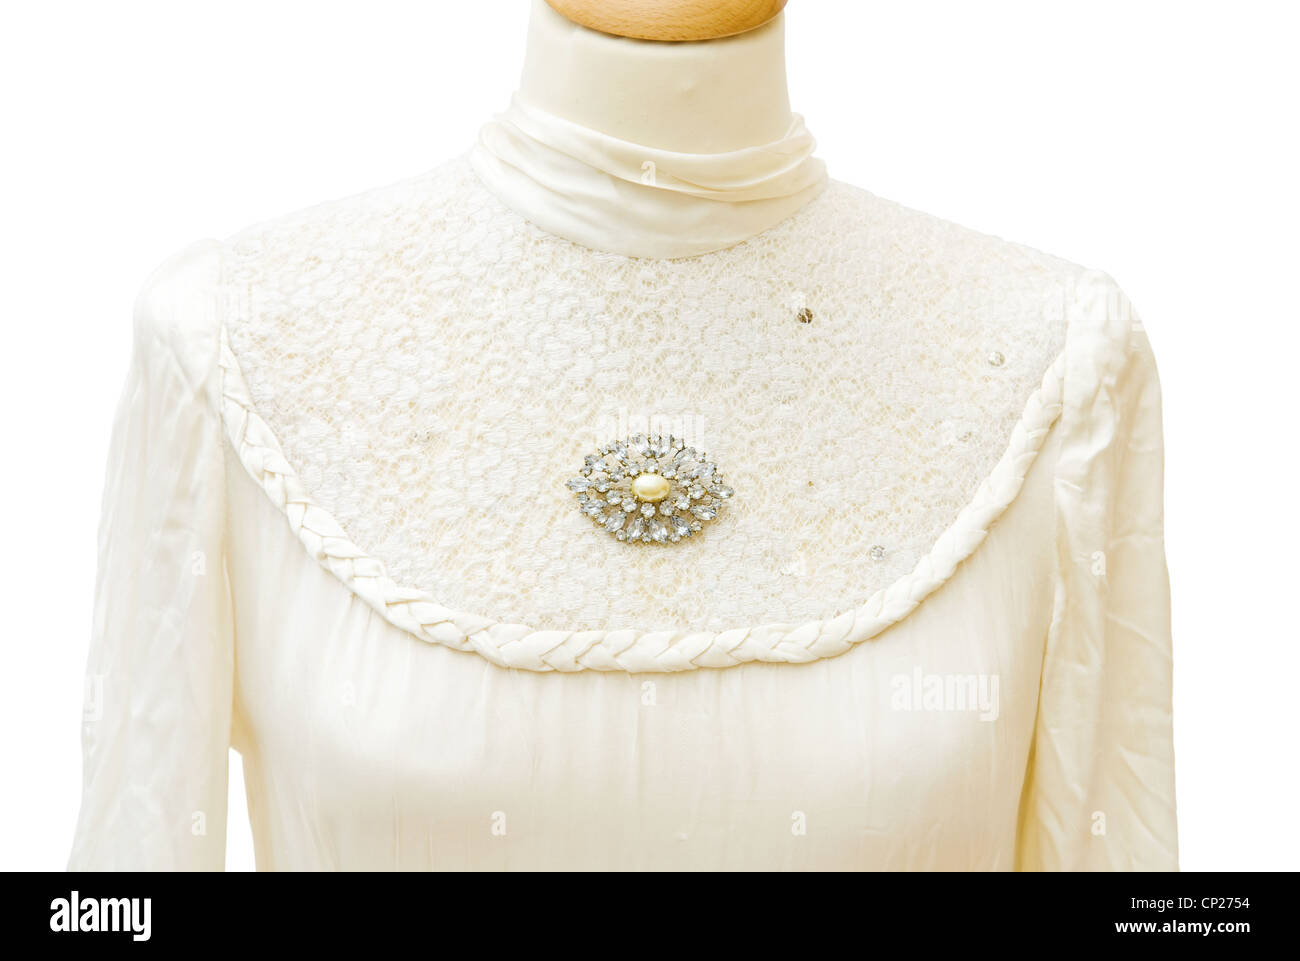 1930 Véritable satin blanc robe de mariée. Broche vintage bijoux de diamants. Détail sur la dentelle. Plus isolé sur fond blanc Banque D'Images